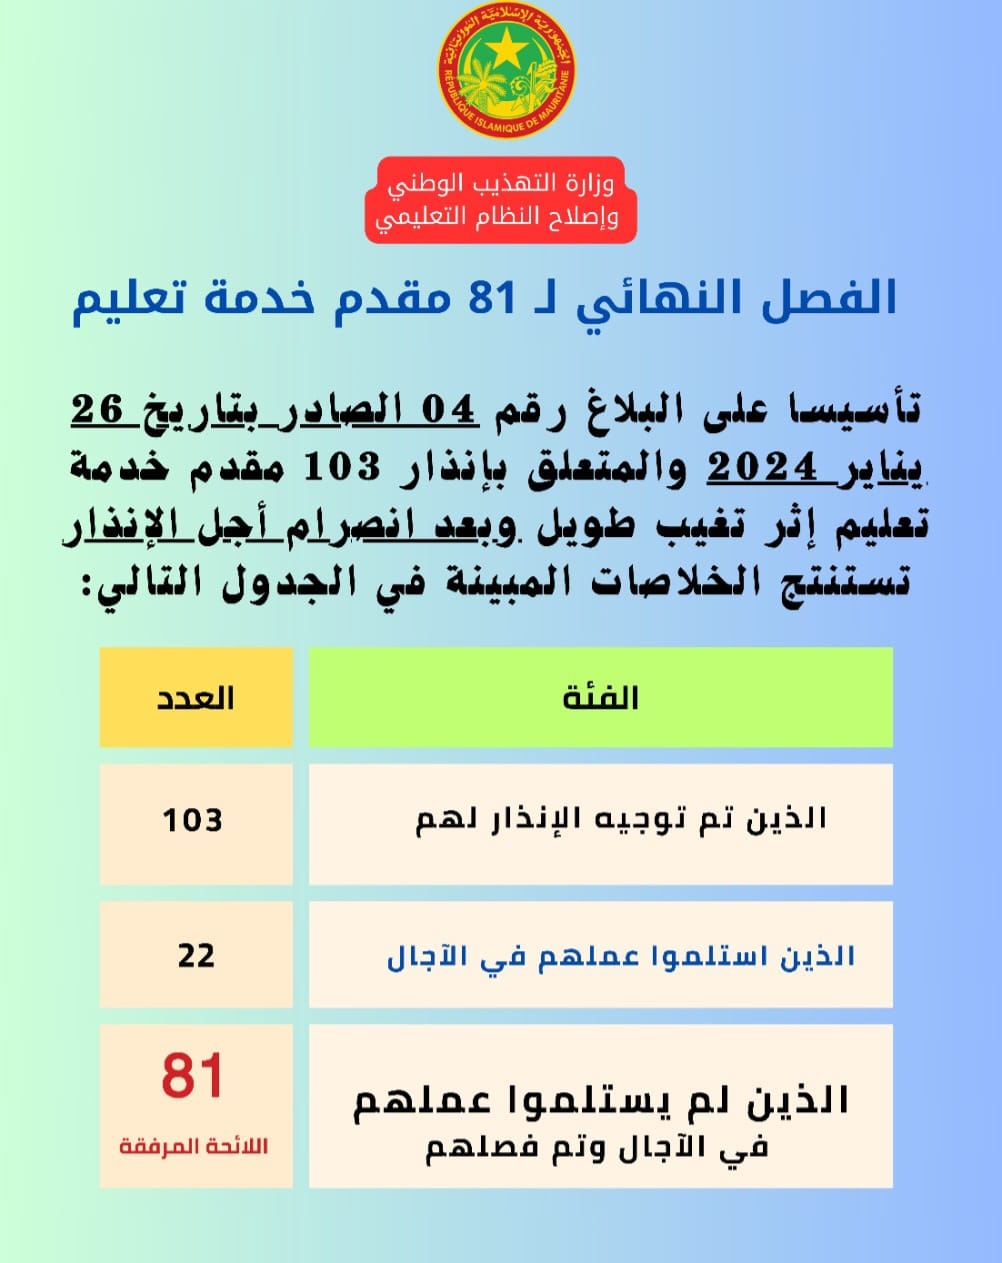 وزارة التهذيب تنشر أسماء الـ81 مقدم خدمة تعليم الذين تم (…)